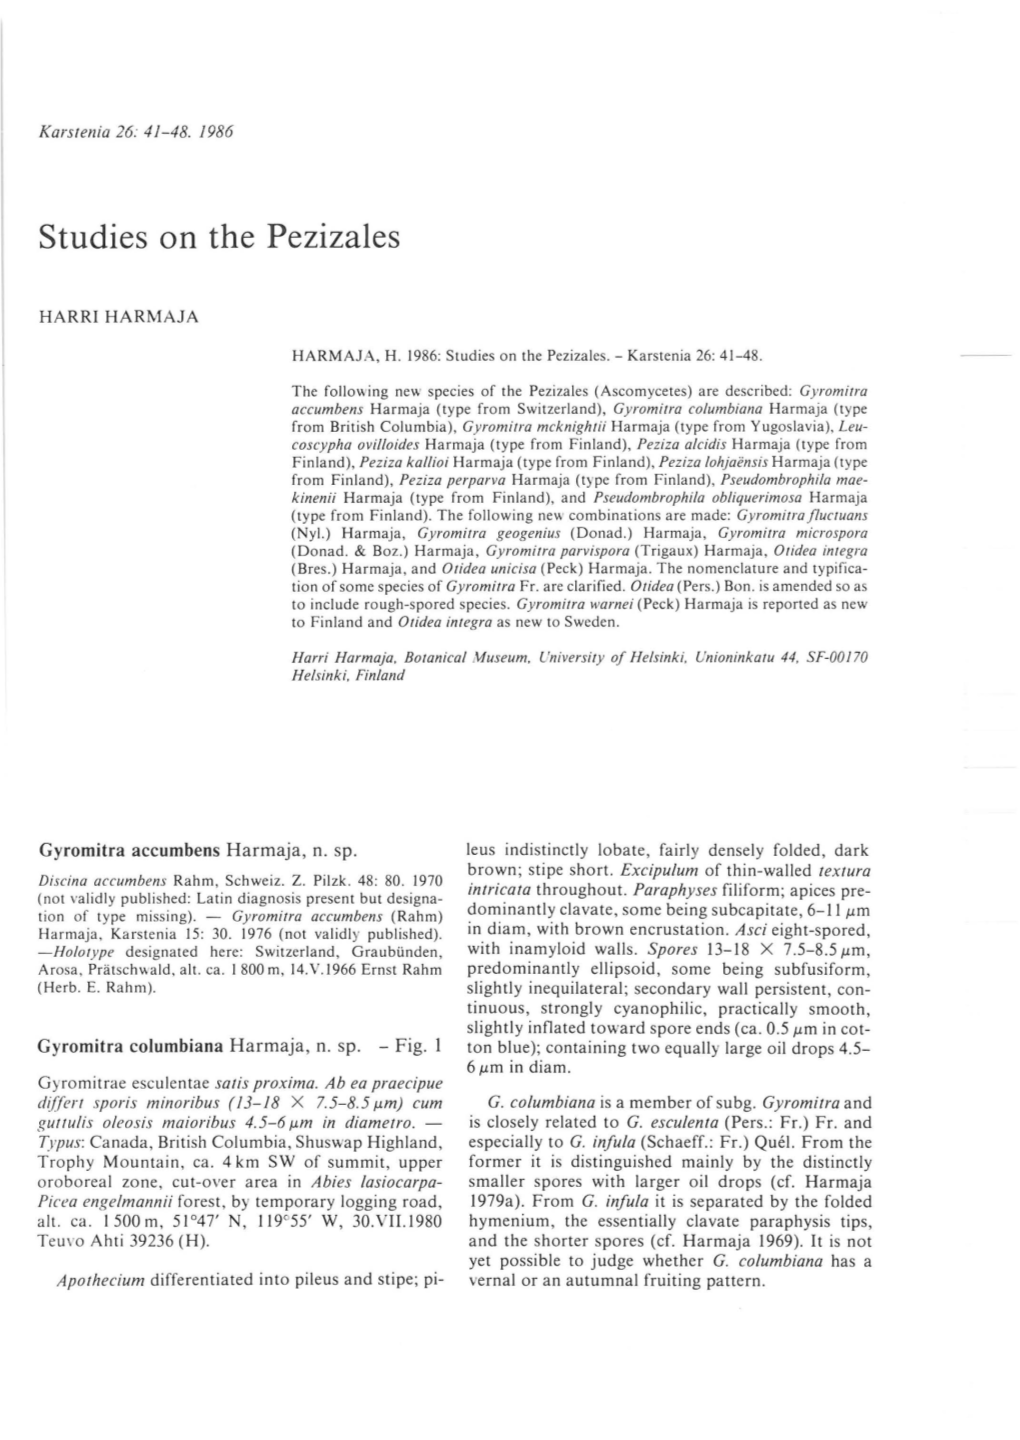 Studies on the Pezizales